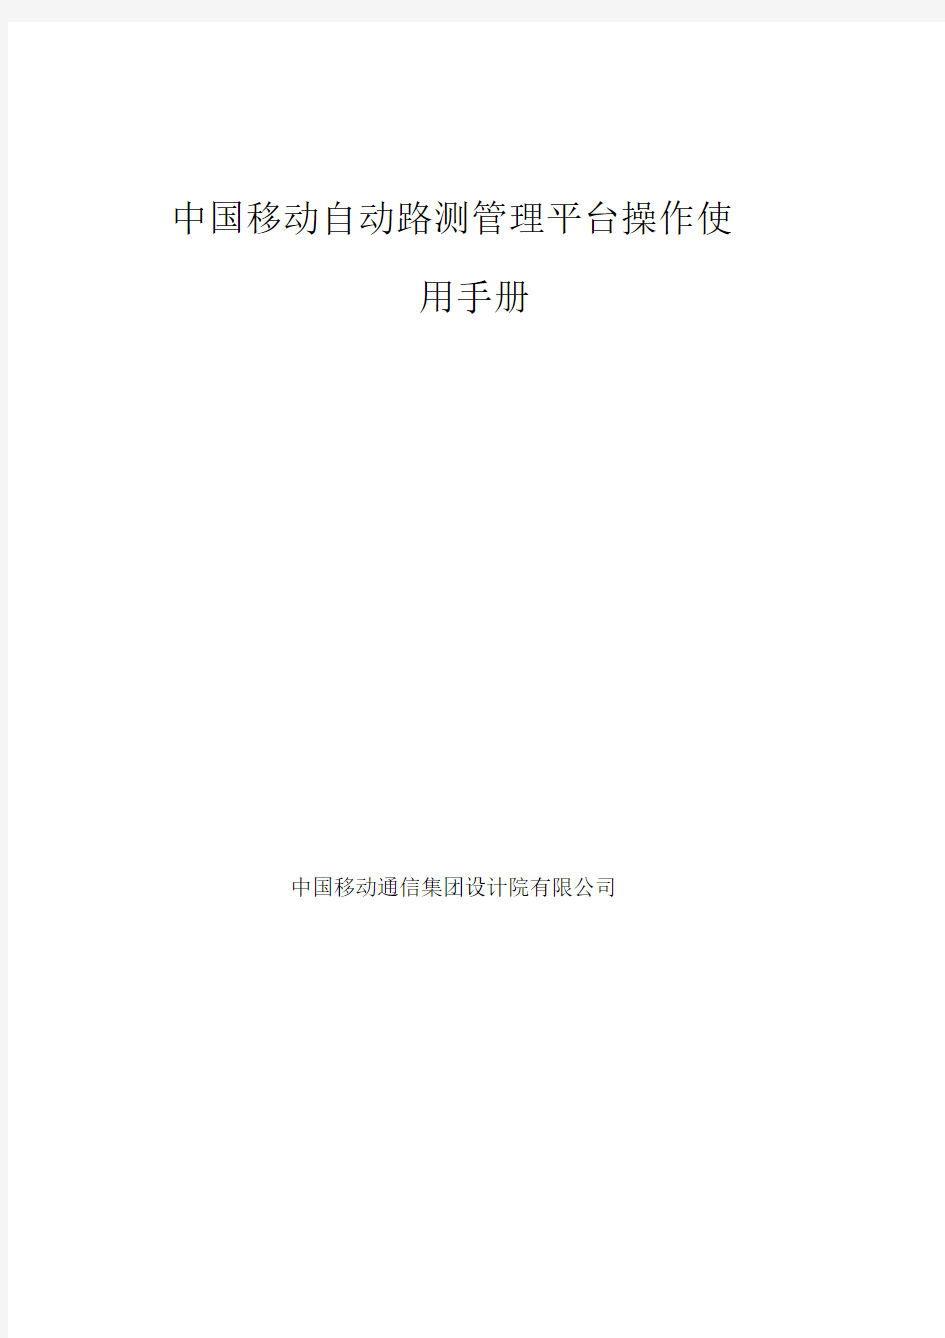 中国移动自动路测管理平台操作使用手册-简易.doc